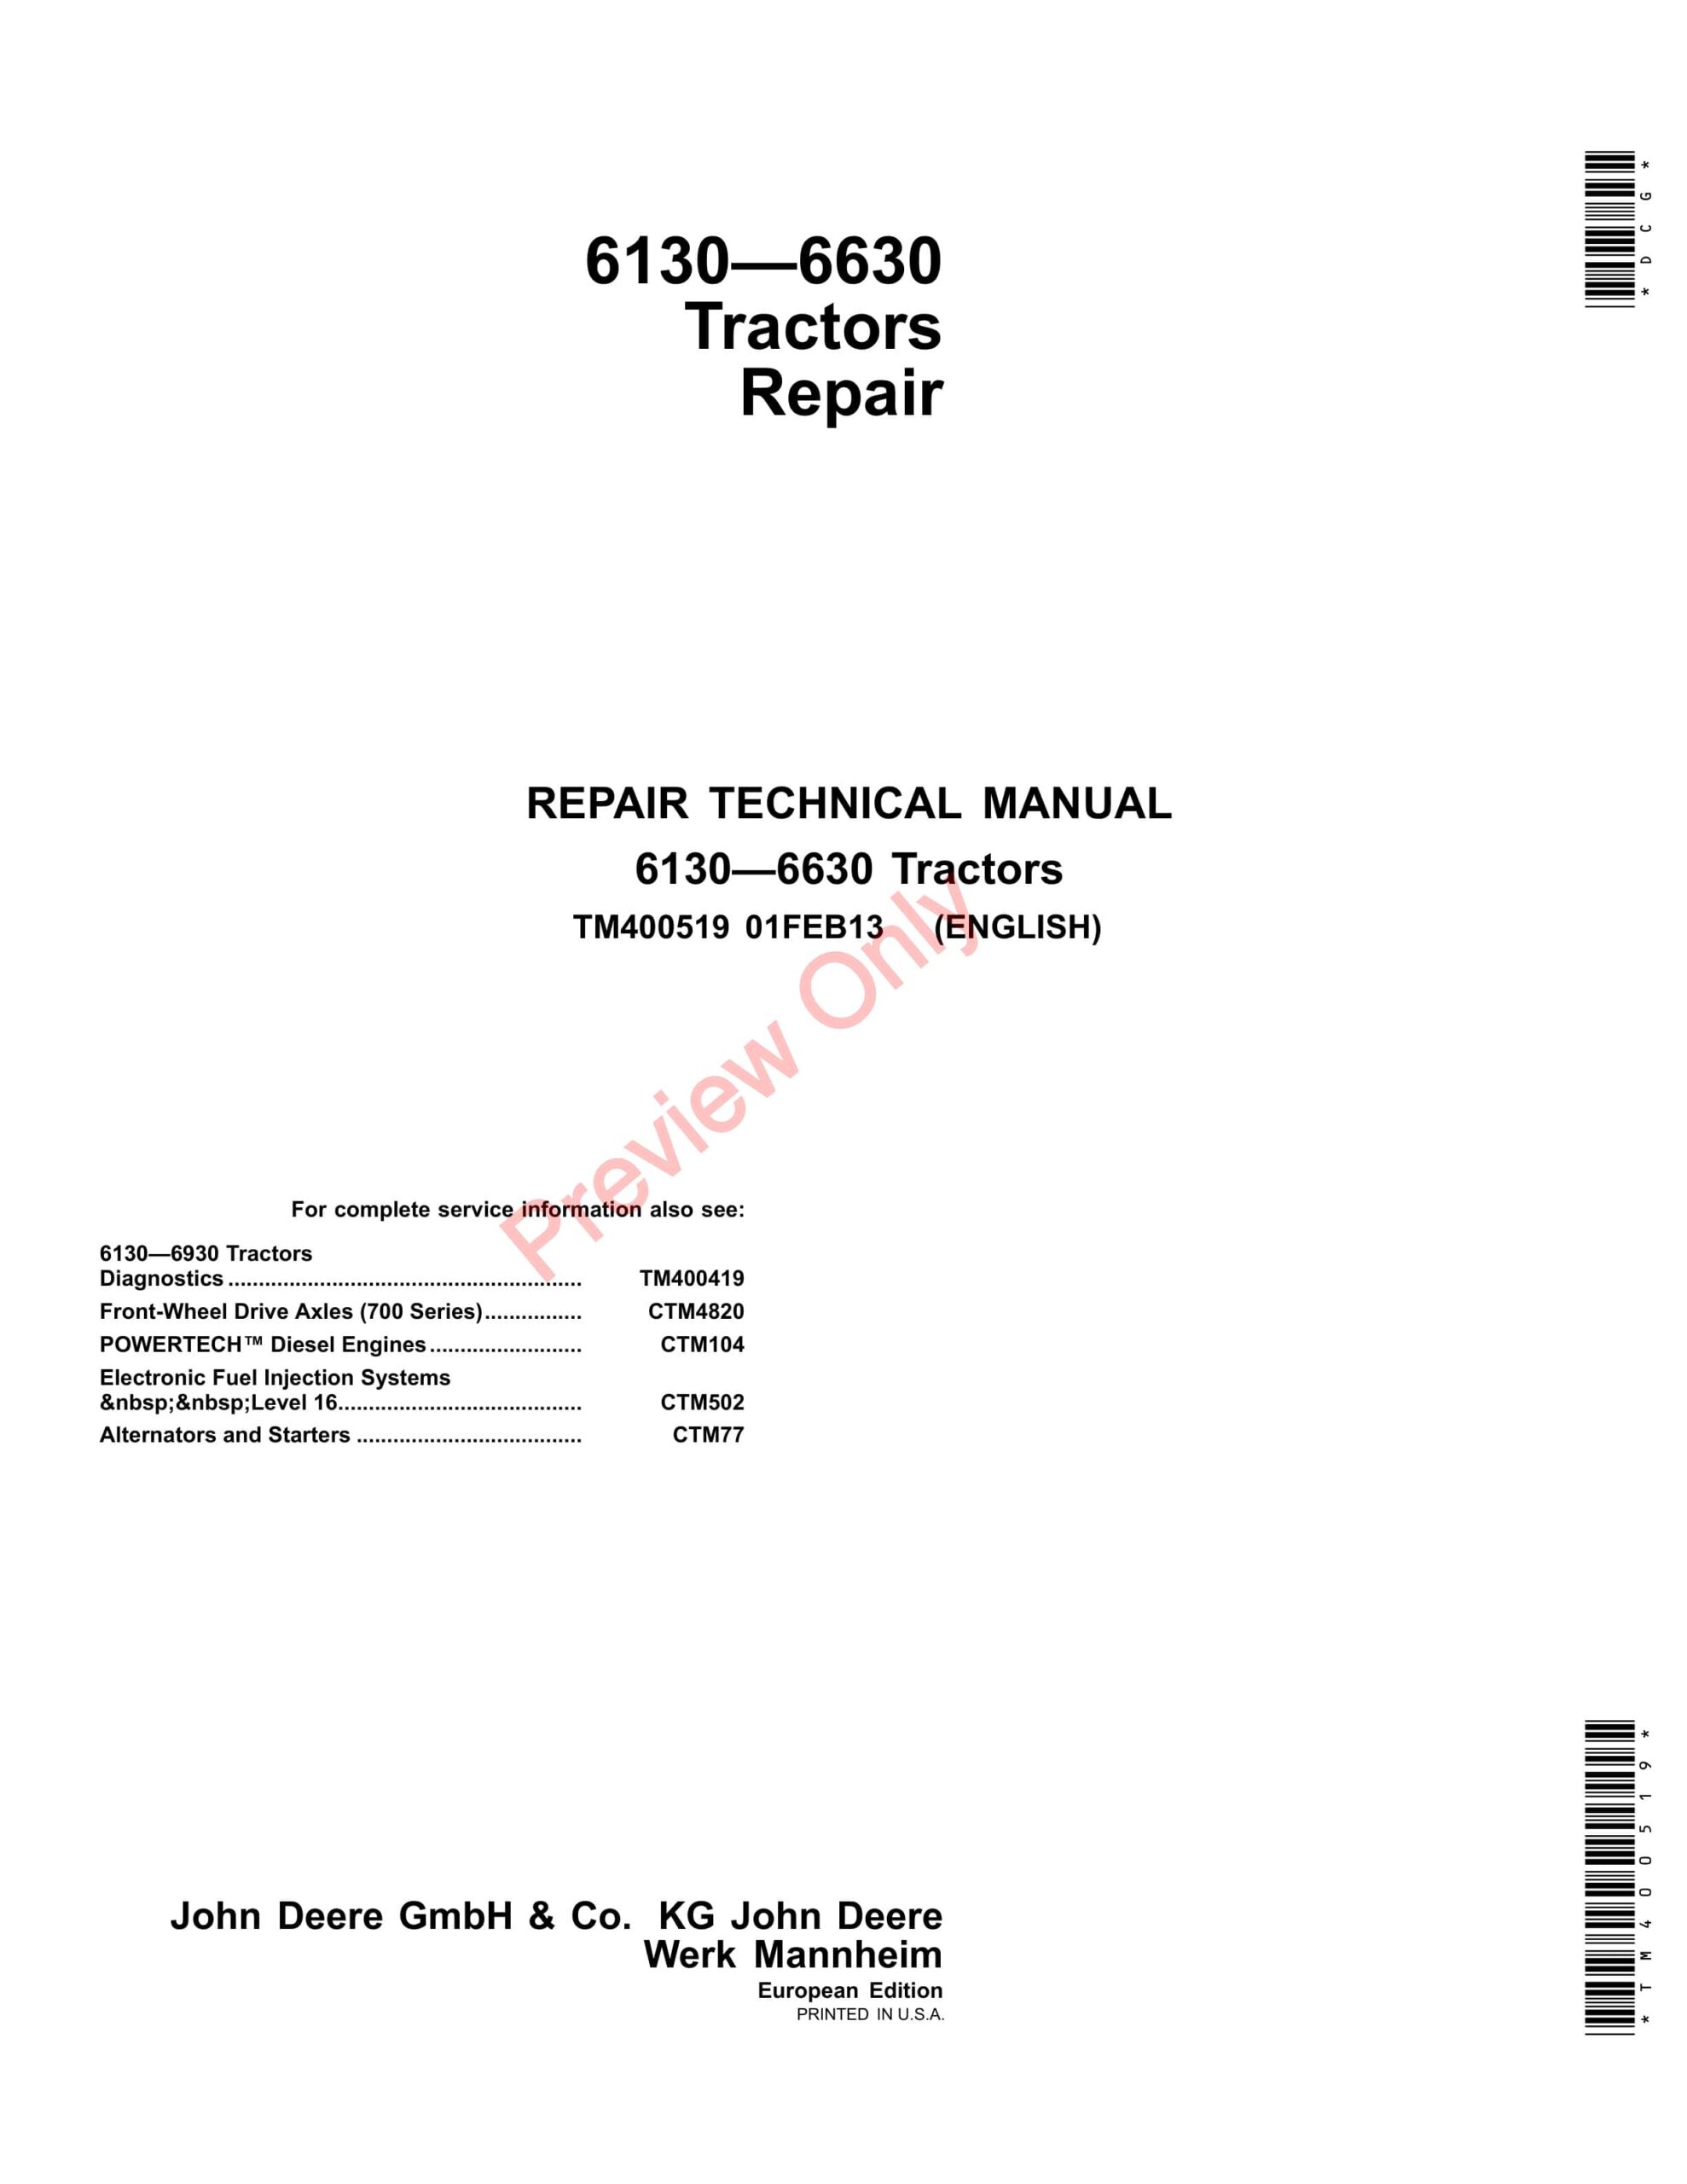 John Deere 6130, 6230, 6330, 6430, 6530, 6534 and 6630 Tractors Repair Technical Manual TM400519 01FEB13-1